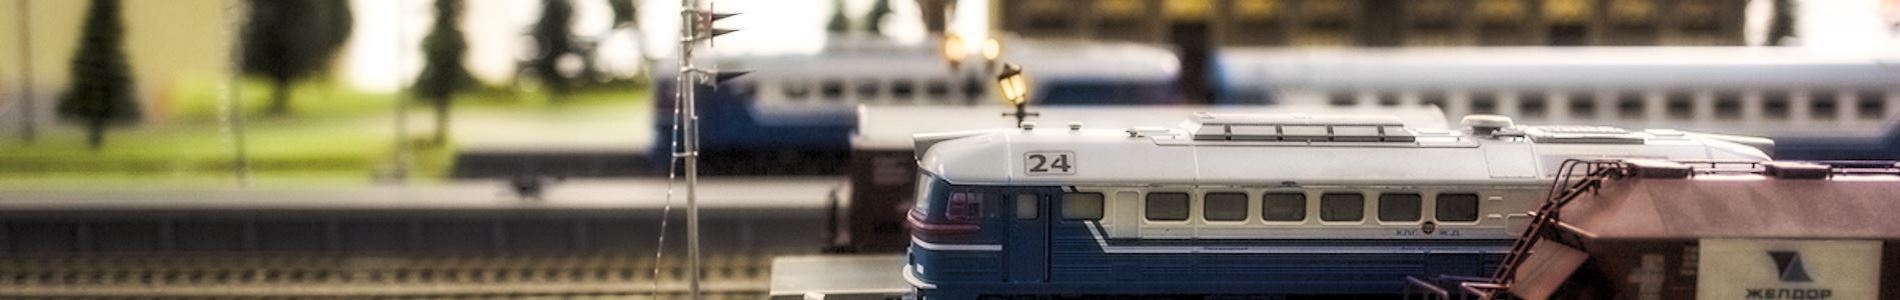 Транспортная безопасность на железнодорожном транспорте